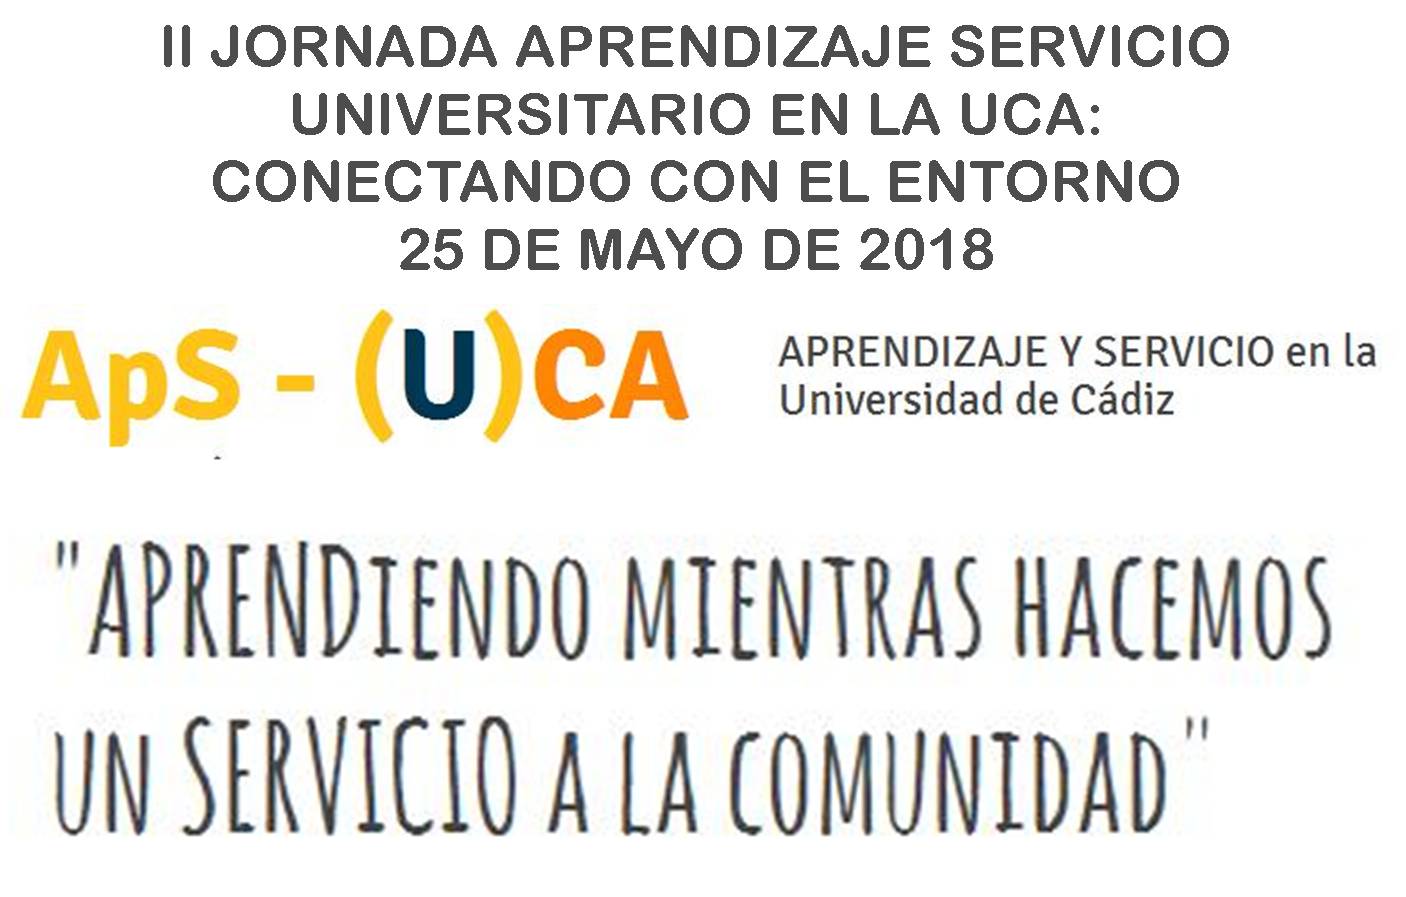 25 de mayo. II Jornada de Aprendizaje y Servicio universitario en la UCA: Conectando con el entorno.